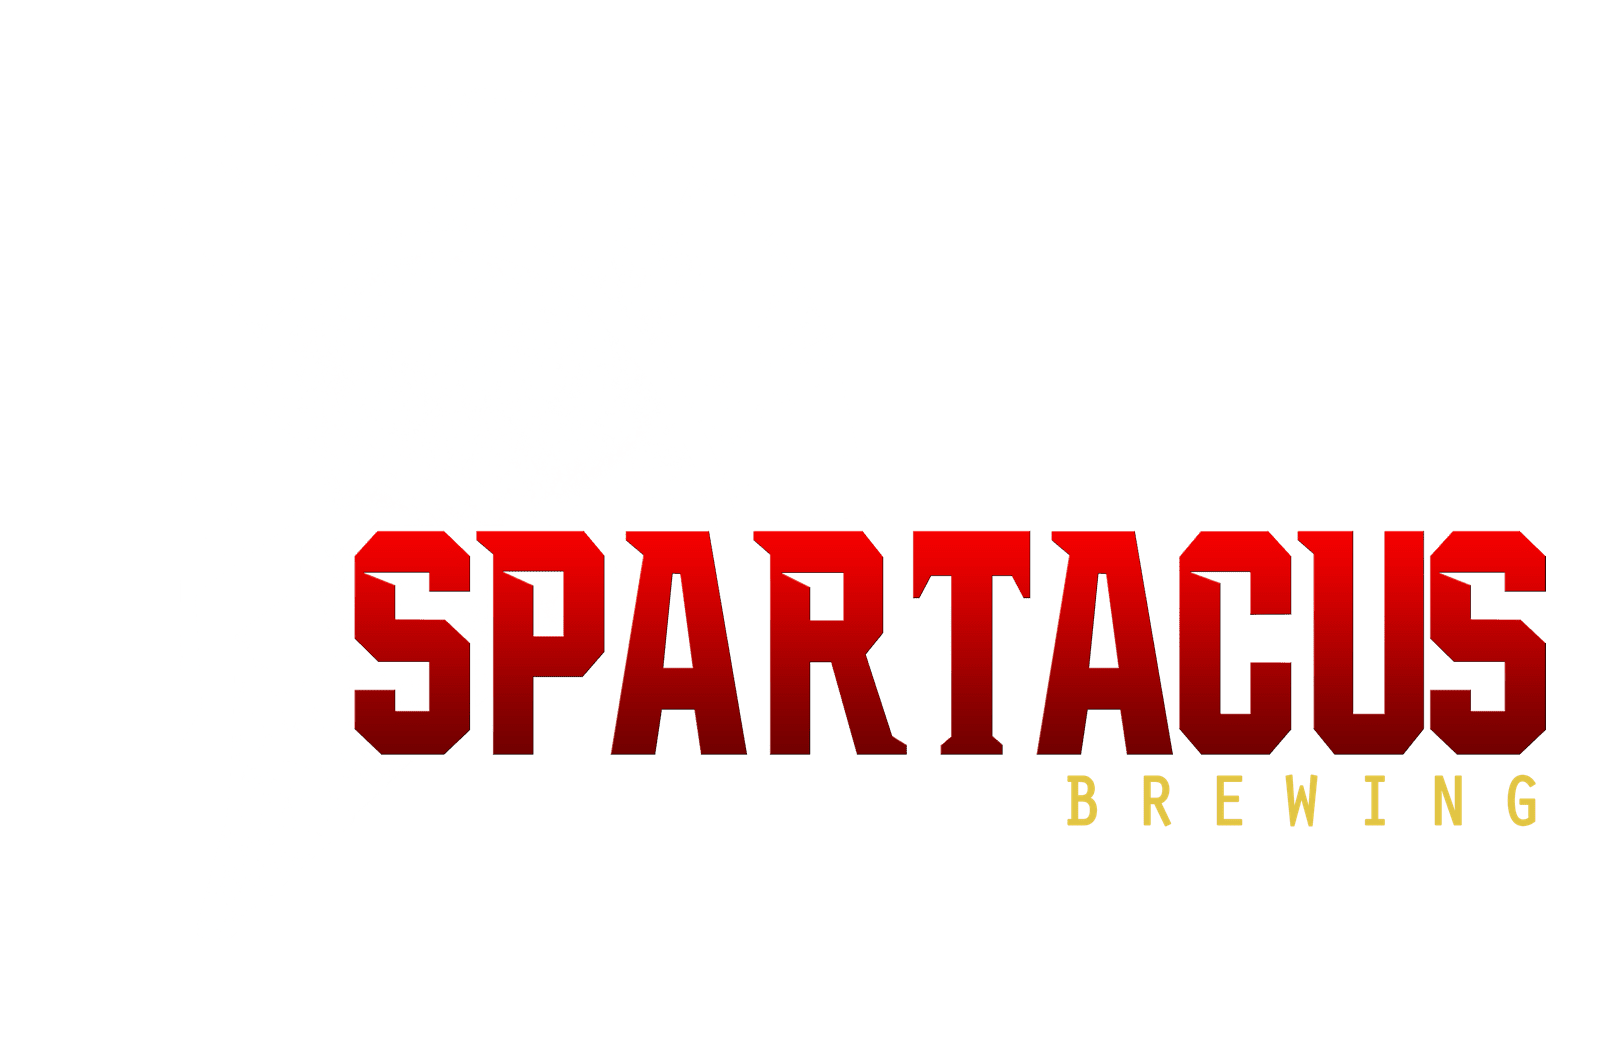 spartacus-logo-brewing-maior-1